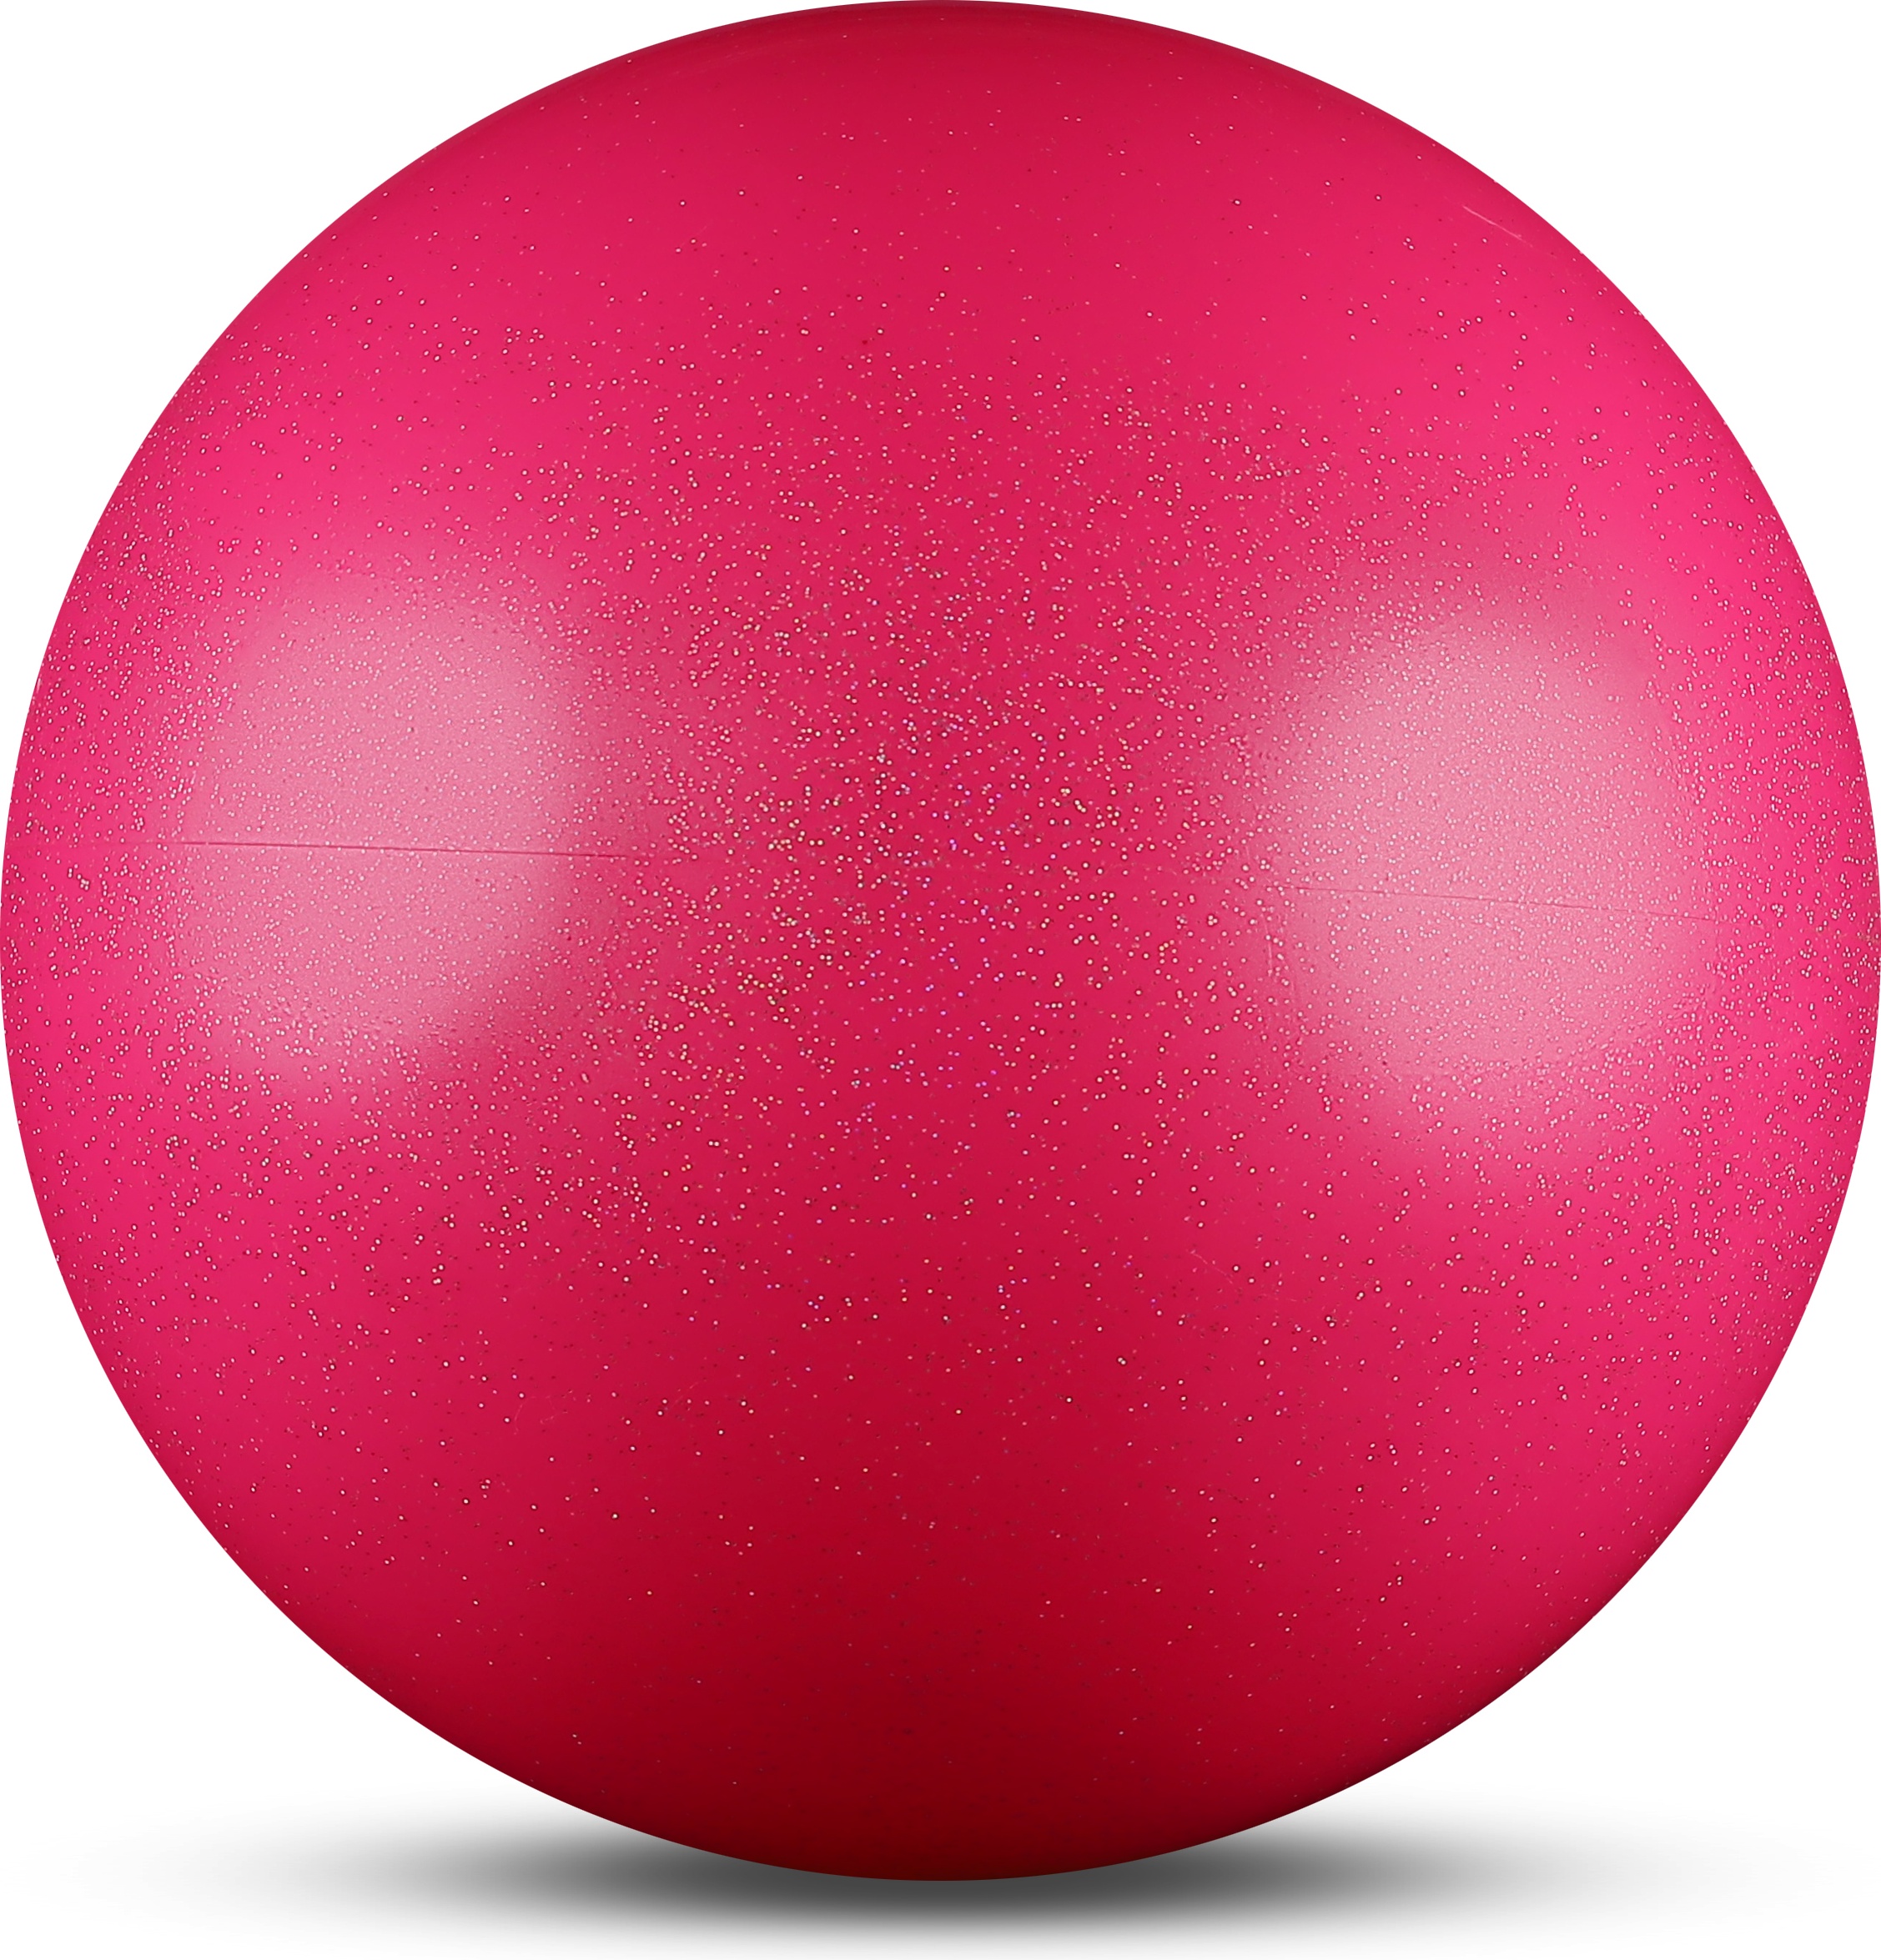 Мяч для художественной гимнастики INDIGO AB2803B fuchsia, 15 см